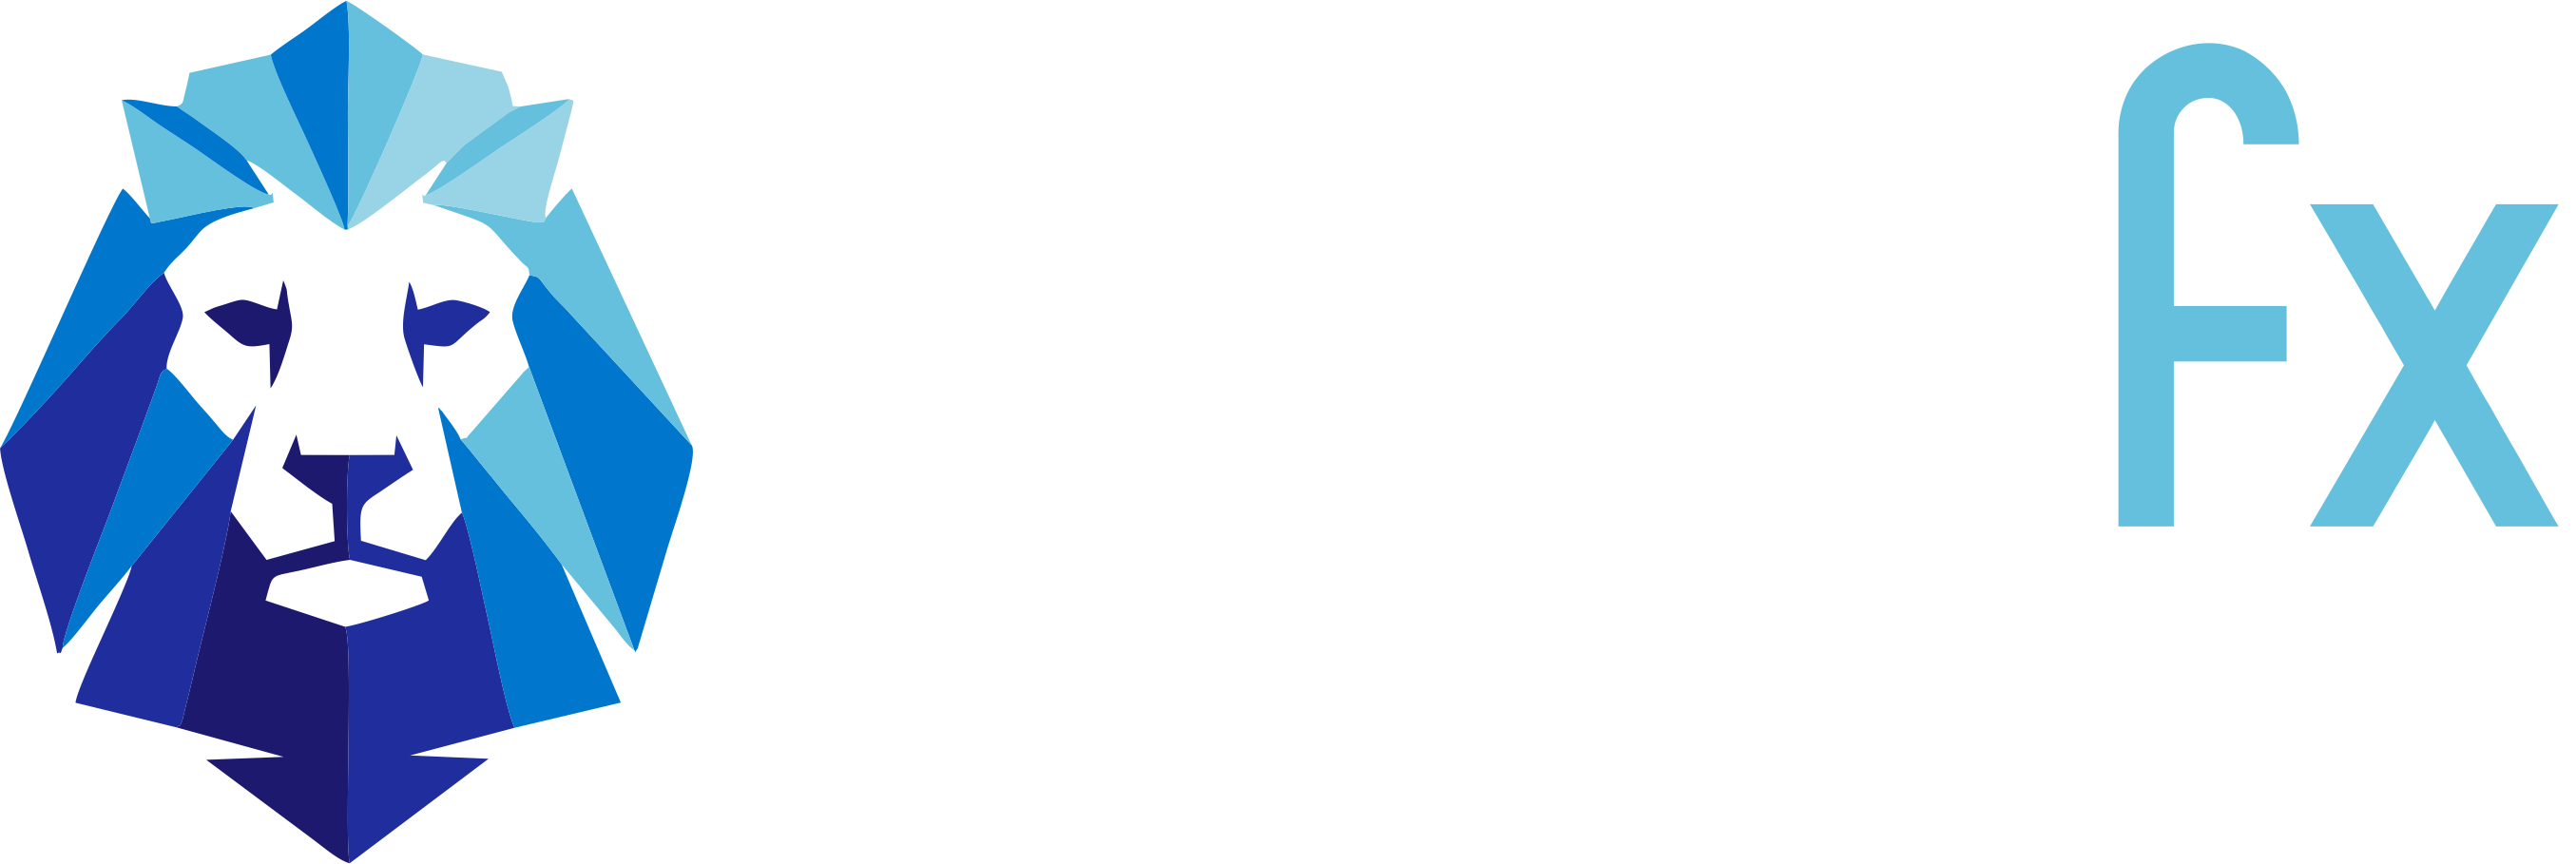 PolyFxMarket


